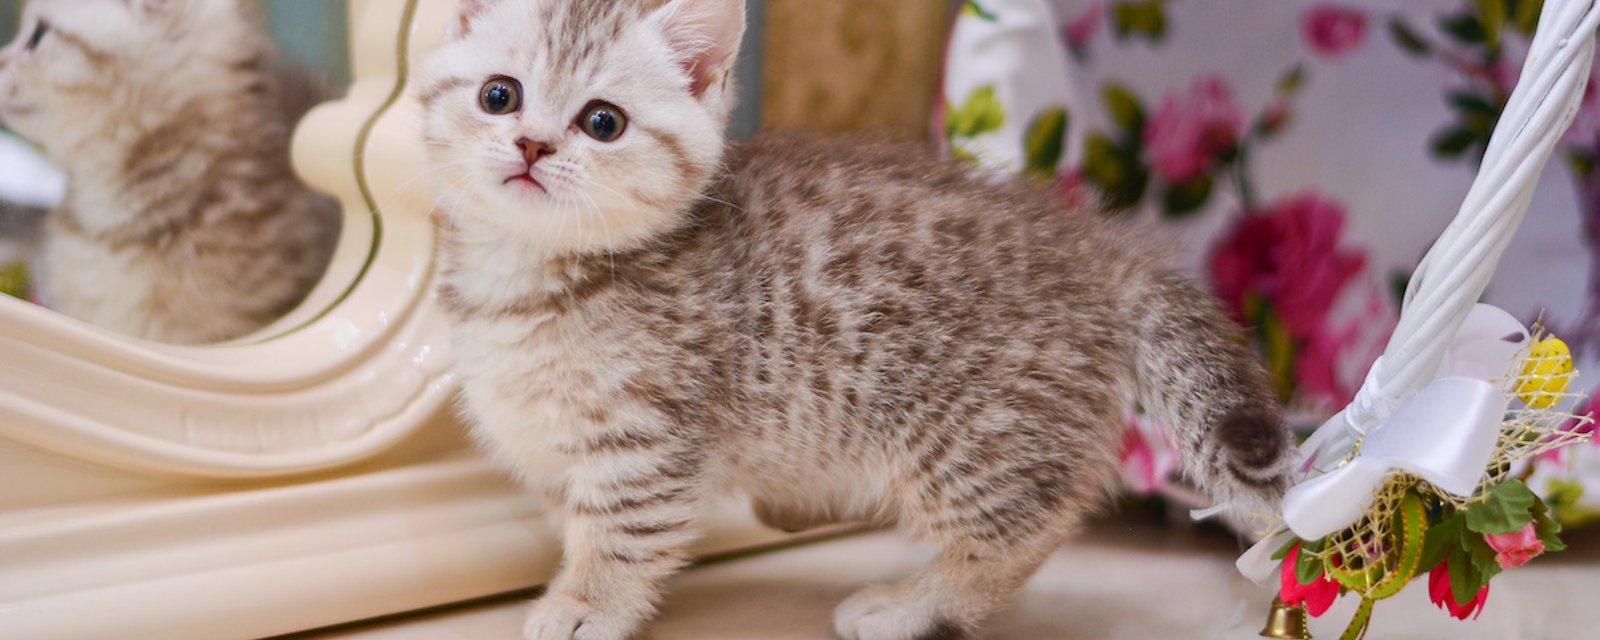 5 races de chats parmi les plus petits du monde